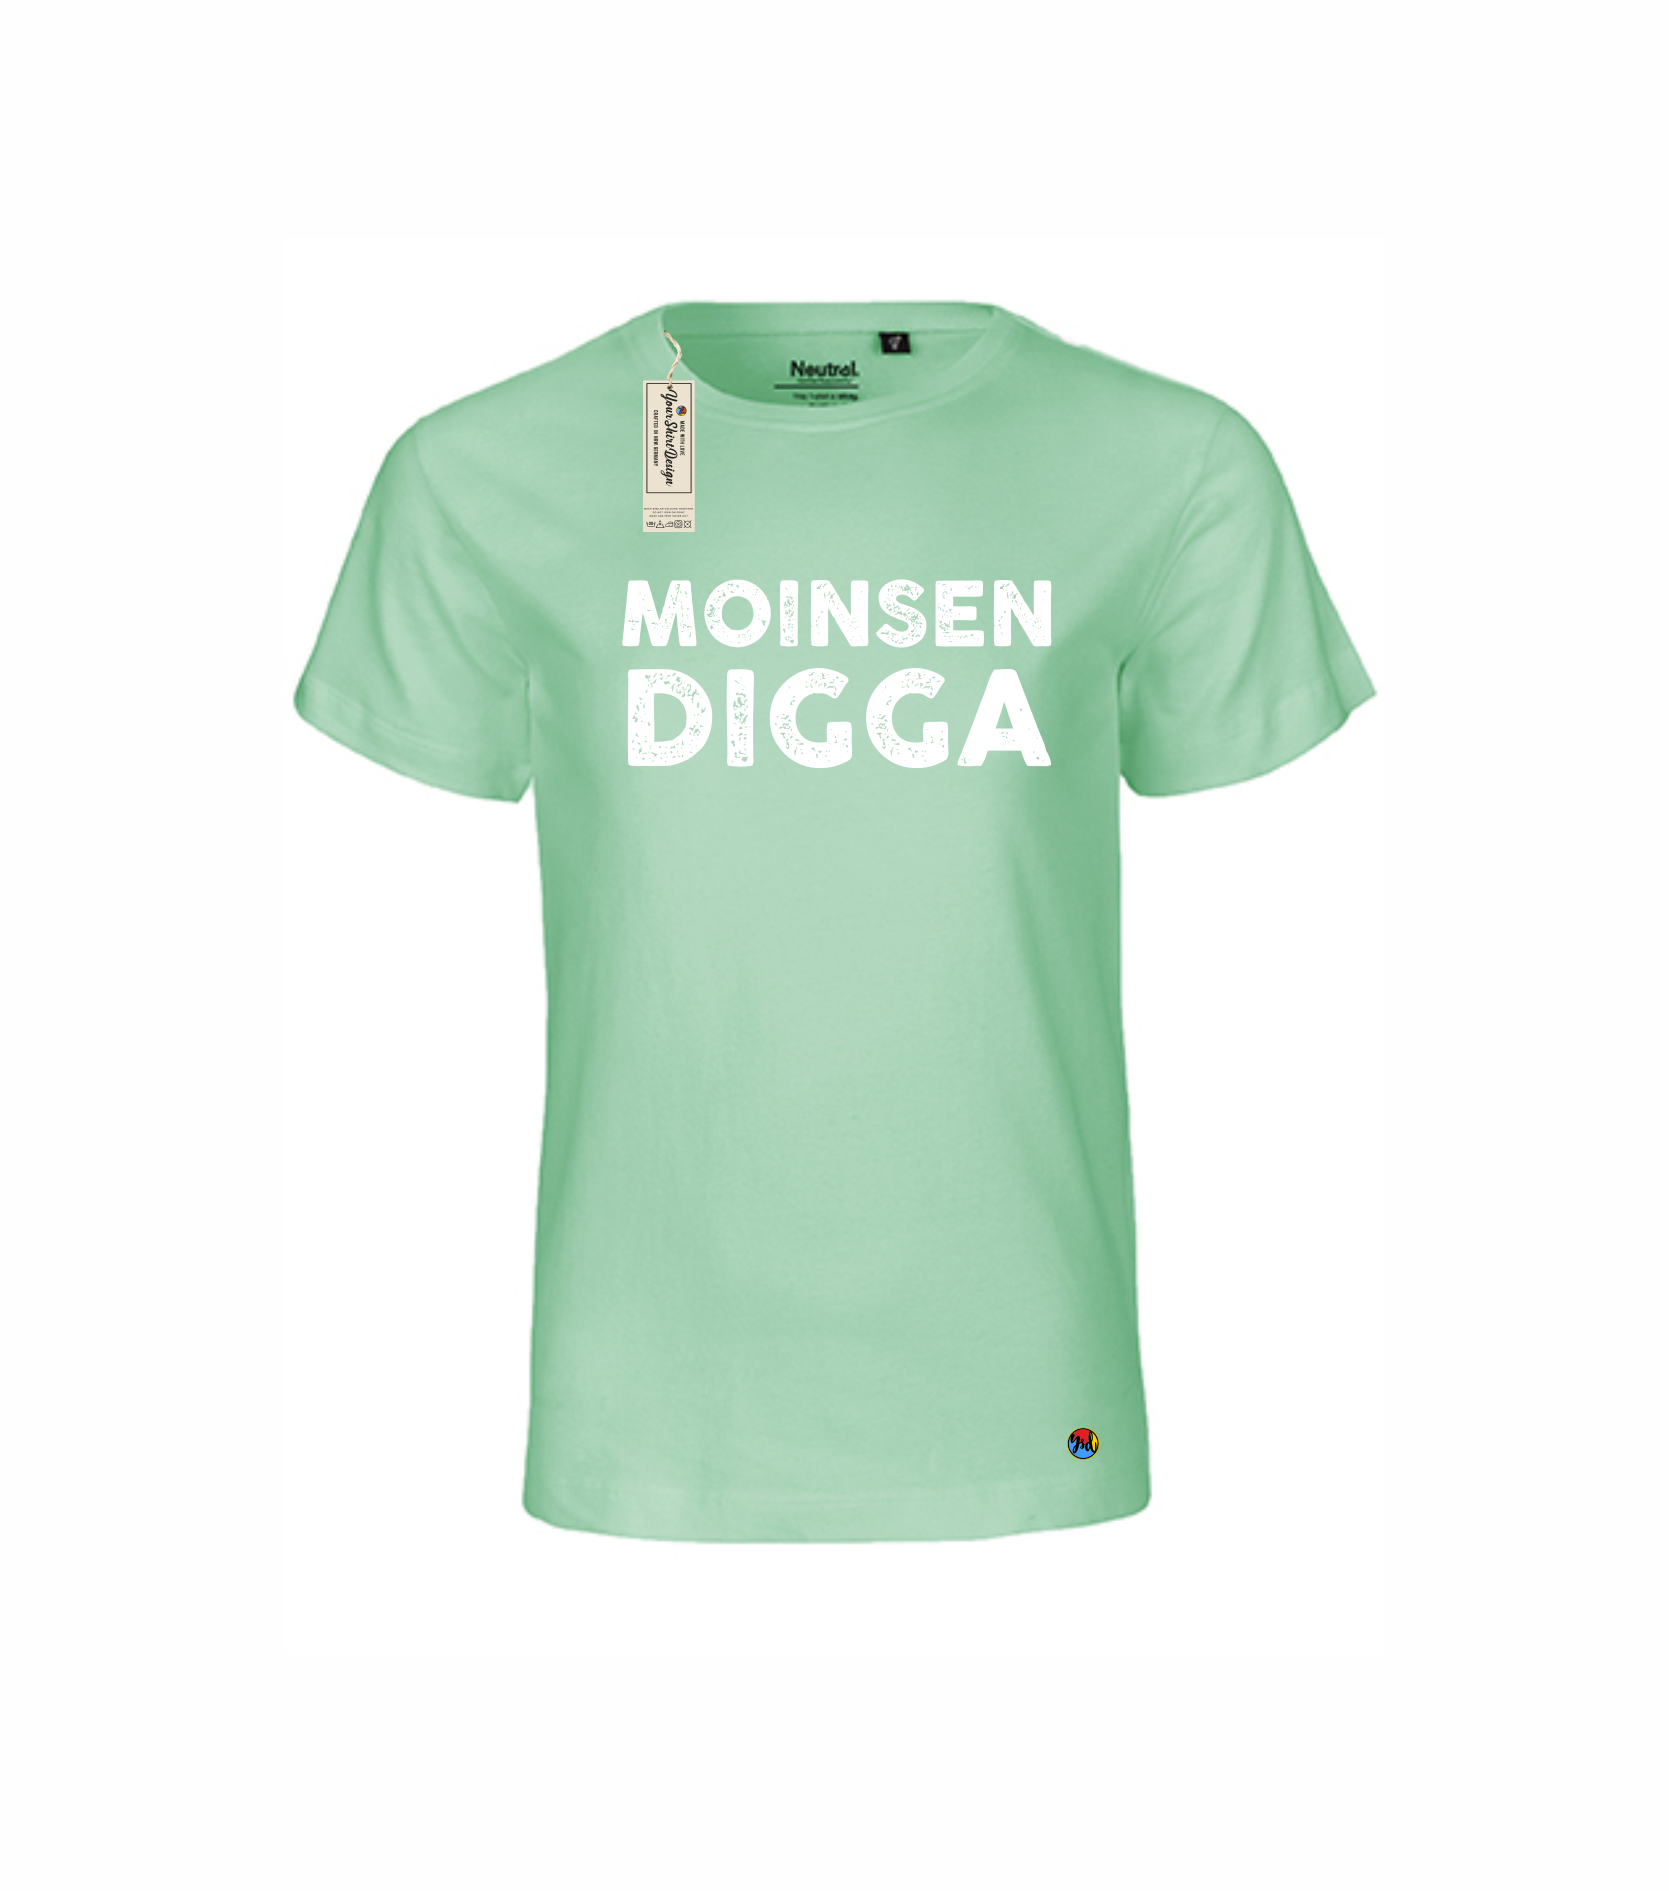 MOINSEN DIGGA Kinder T-Shirt (verschiedene Farben) — Your Shirt Design